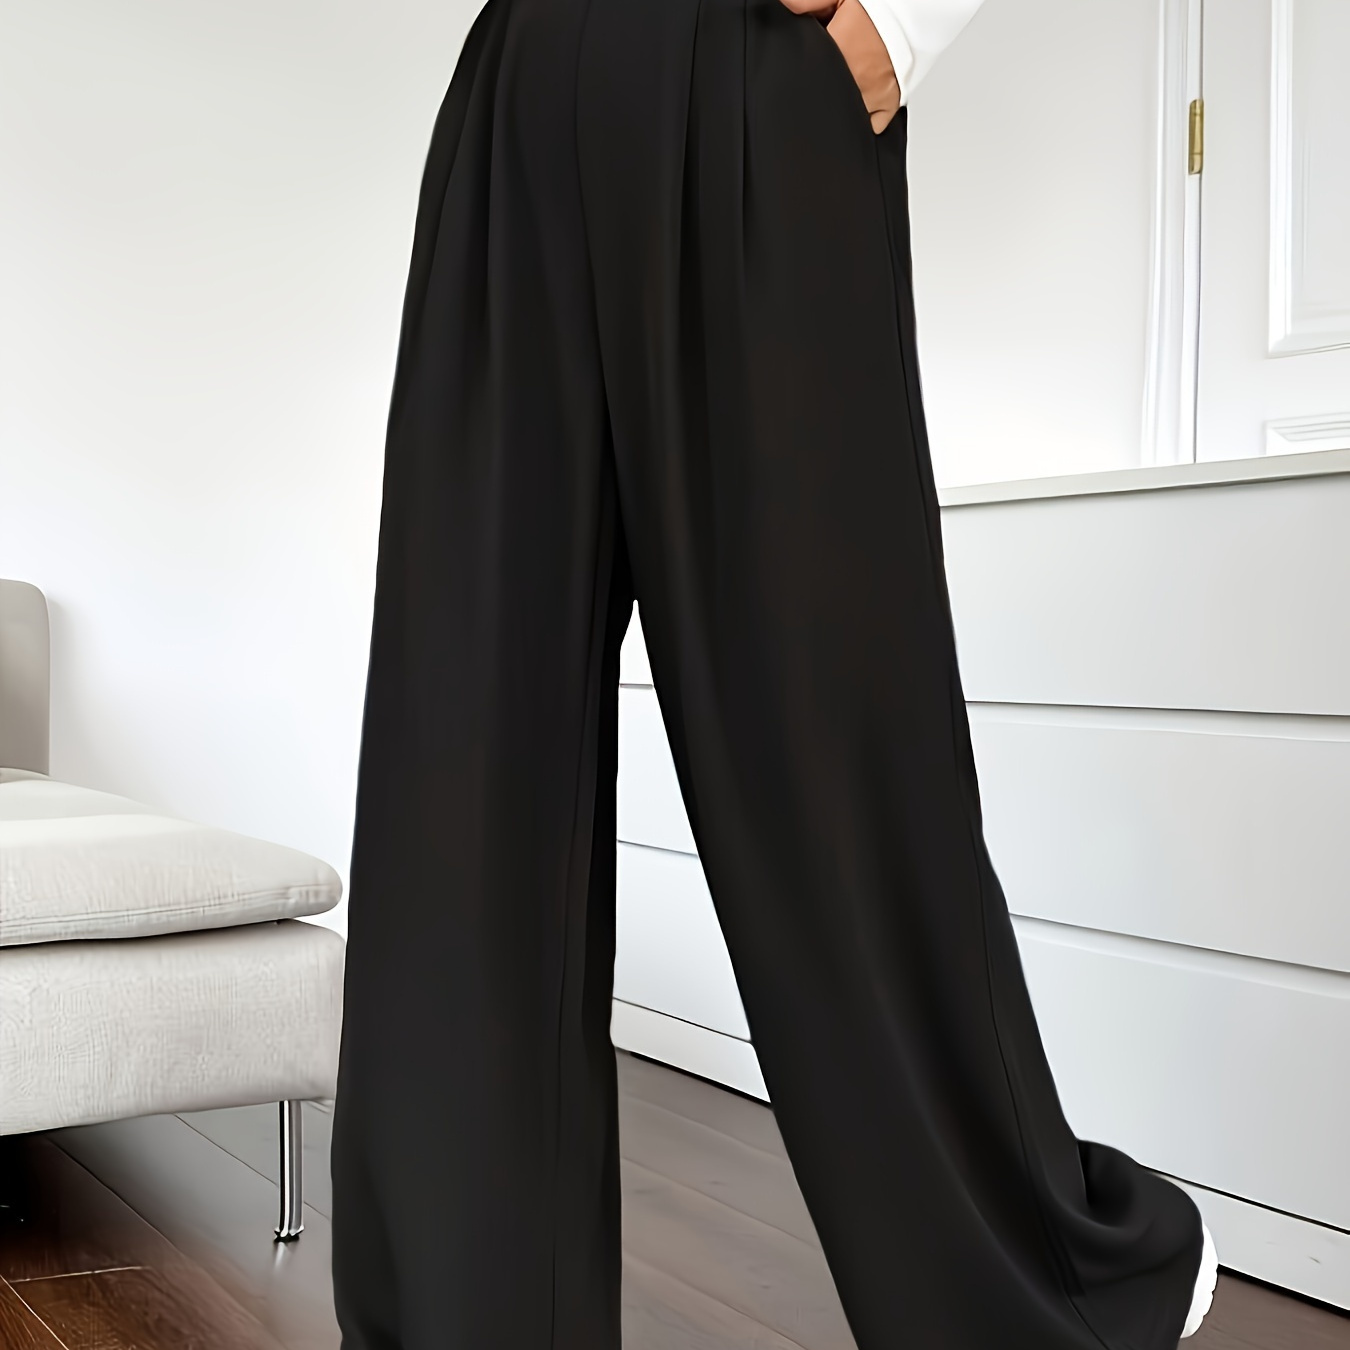 

Pantalon taille haute de couleur unie, élégant pantalon large à double poches pour le printemps et l'été, vêtements pour femmes.